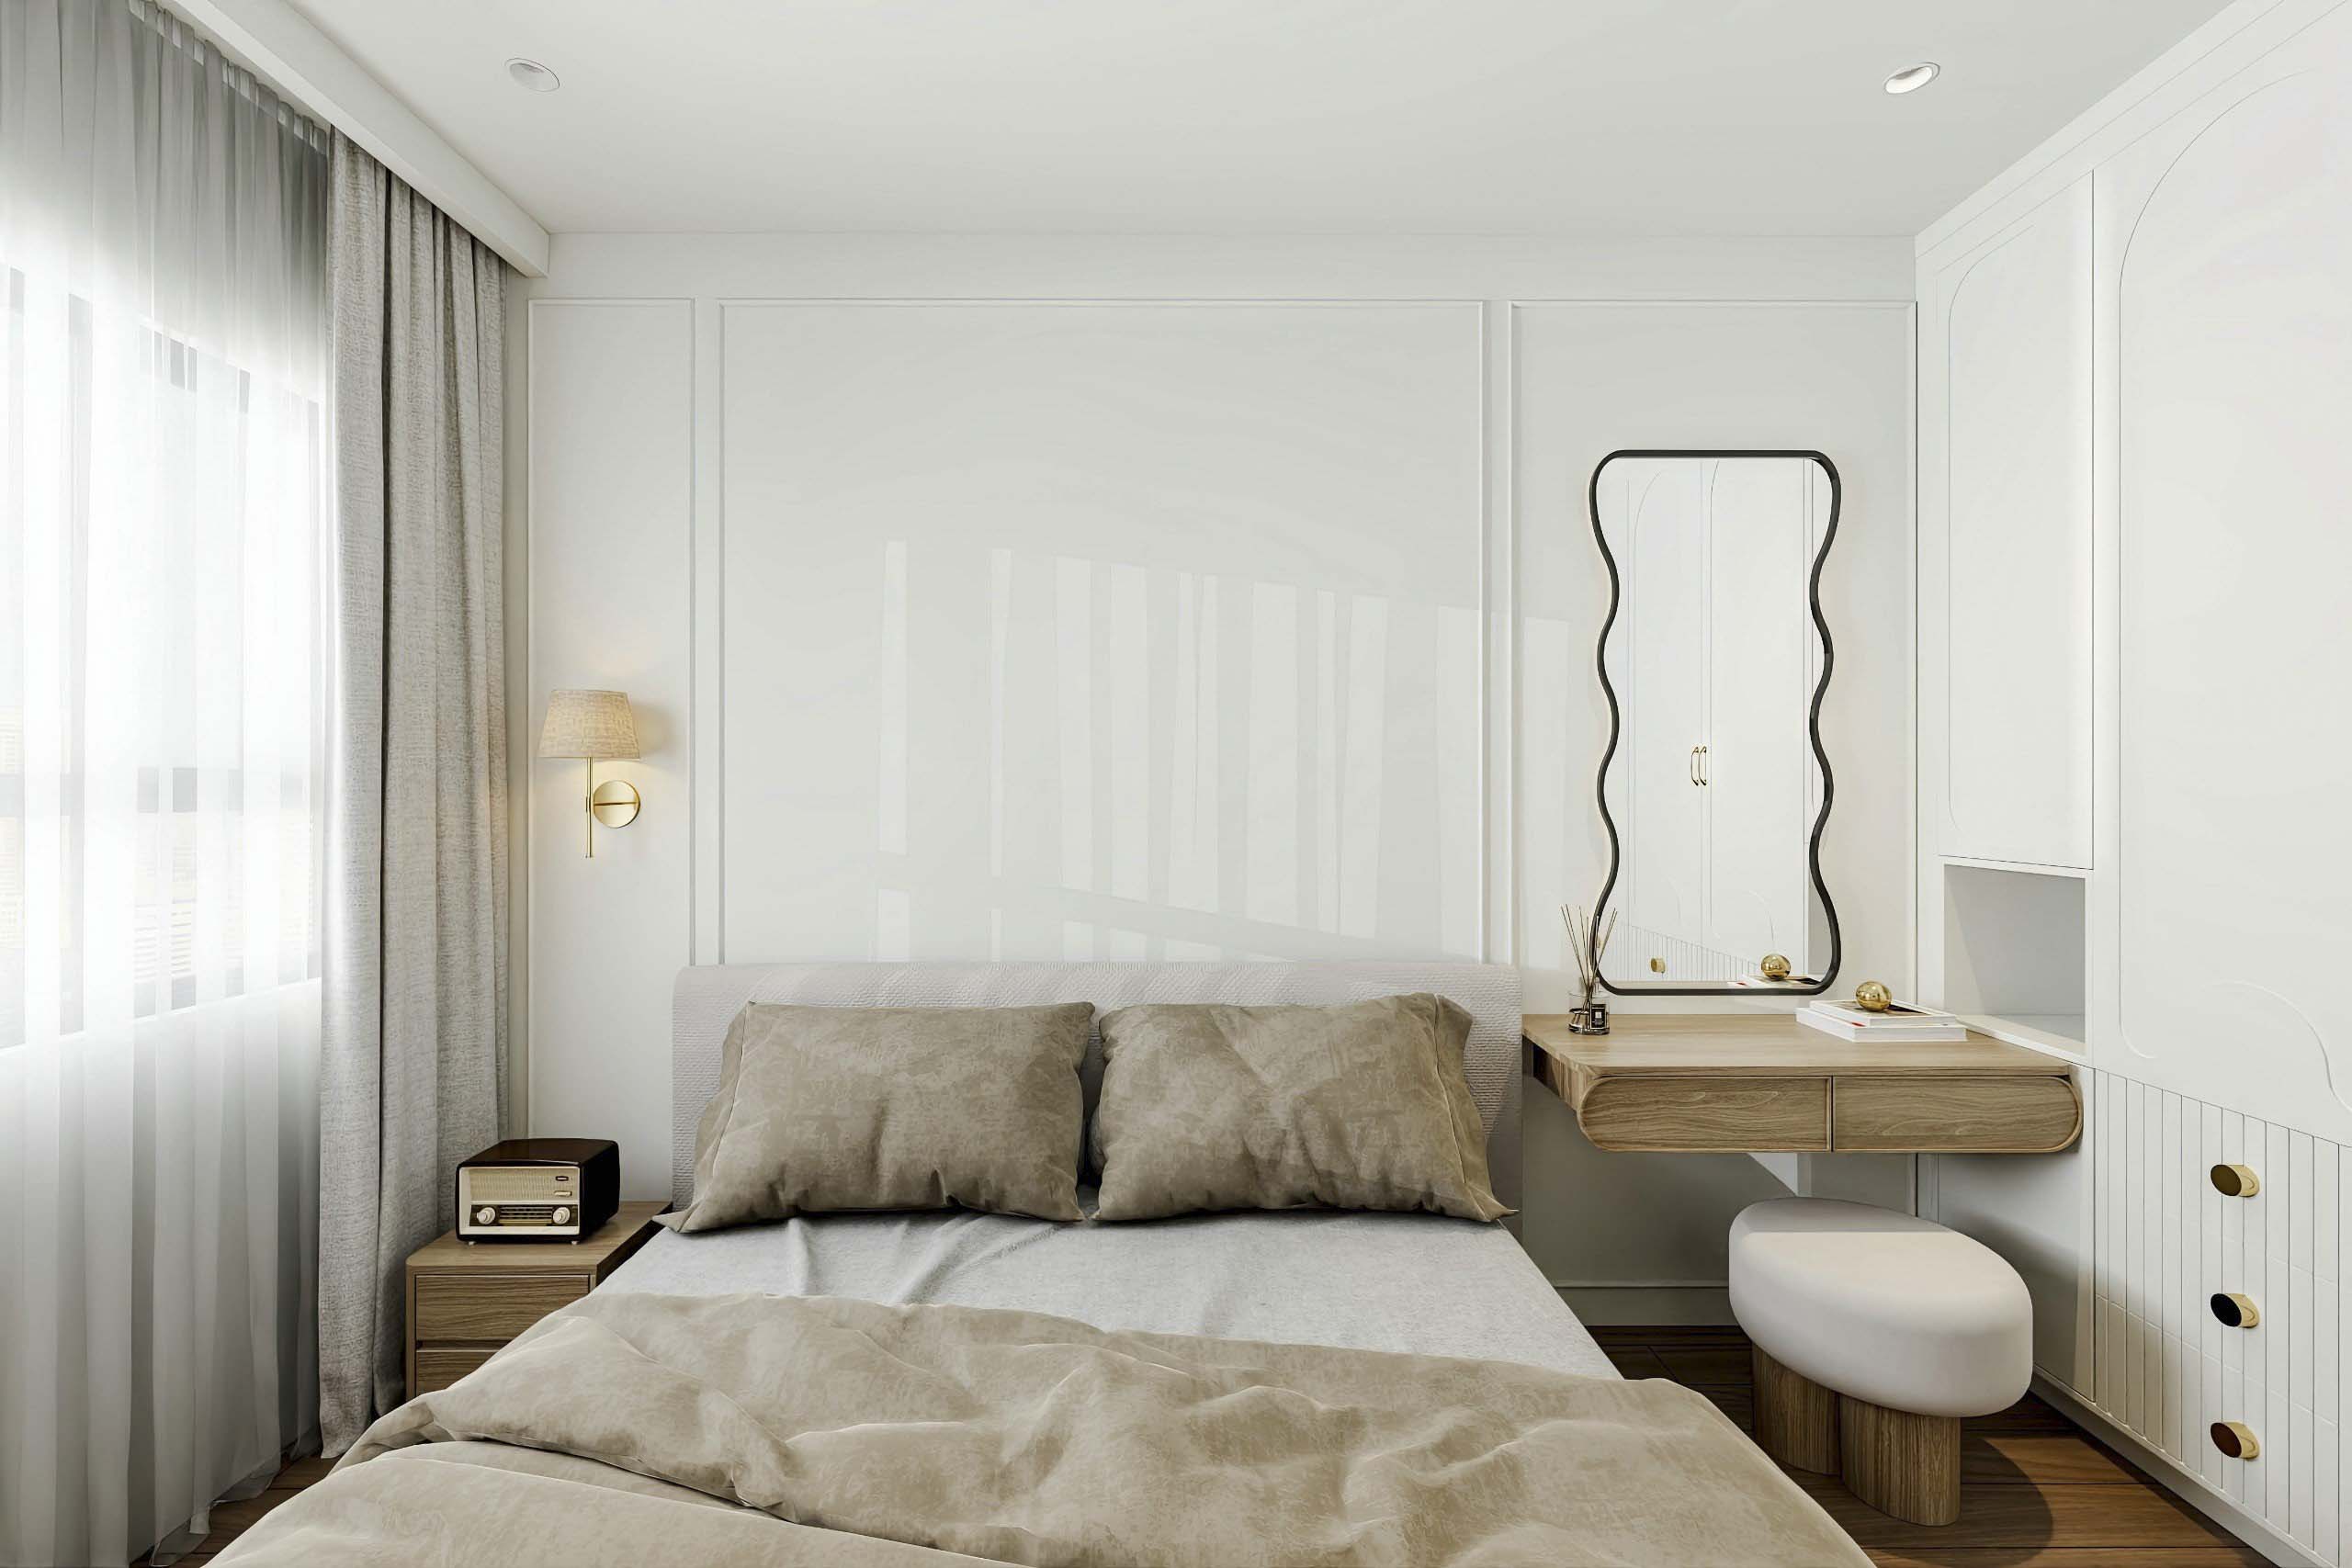 Phòng ngủ với đường nét cá tính của gương lượn sóng, nhẹ nhàng nữ tính